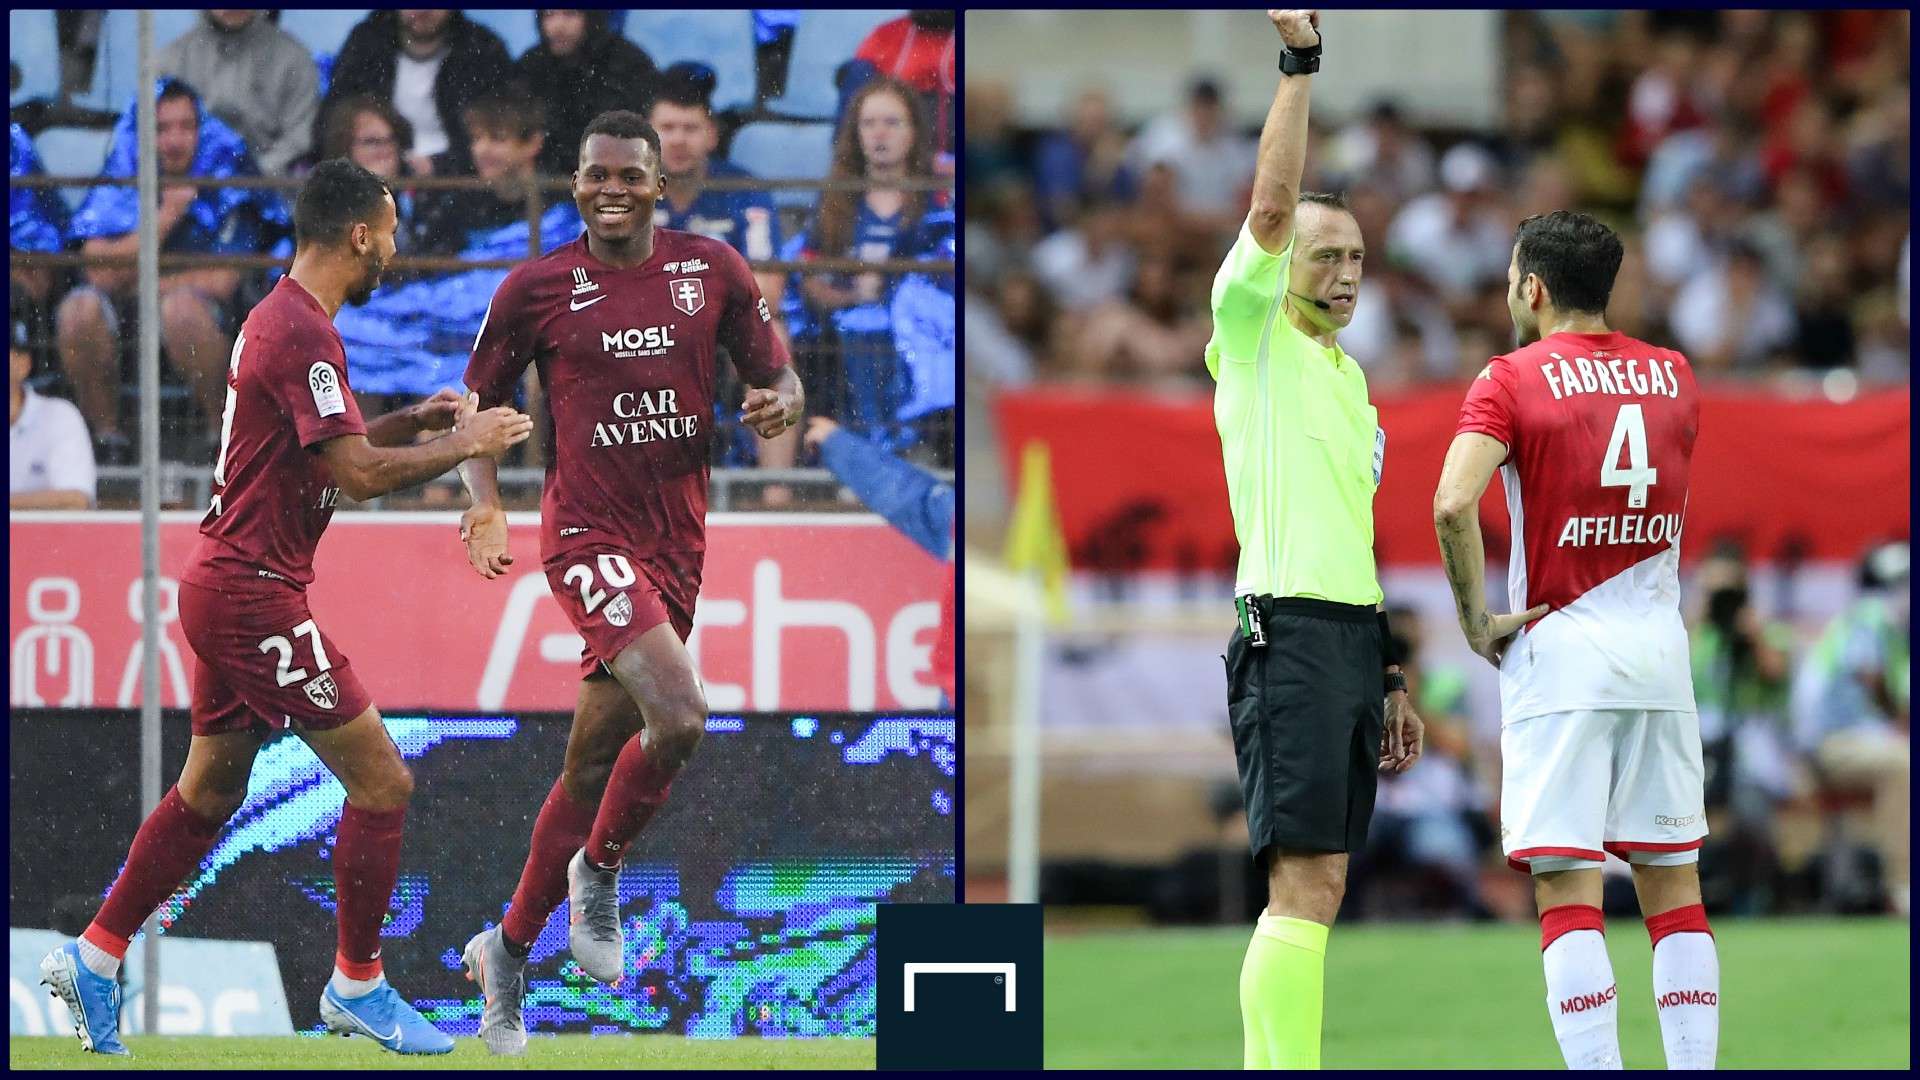 FC Metz - AS Monaco, 2ème journée de Ligue 1 2019-2020, le 17 août 2019